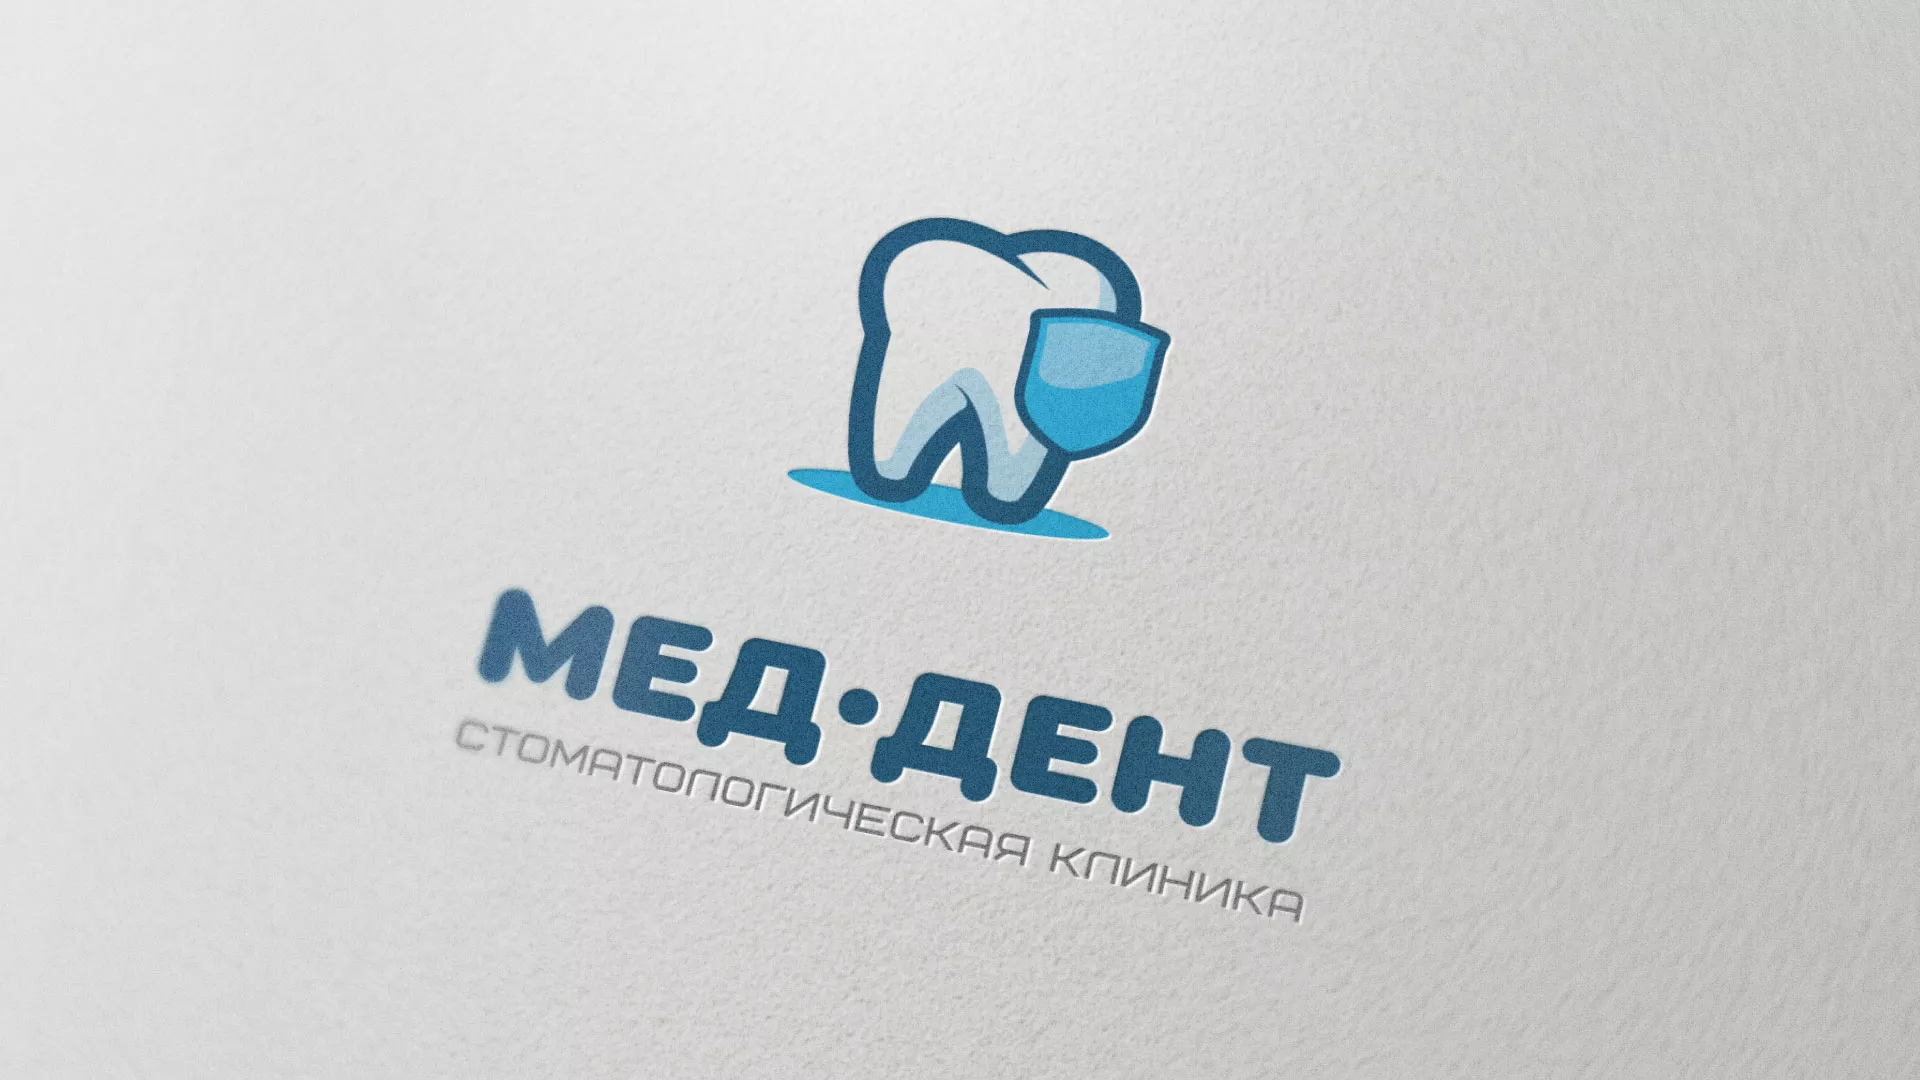 Разработка логотипа стоматологической клиники «МЕД-ДЕНТ» в Зернограде